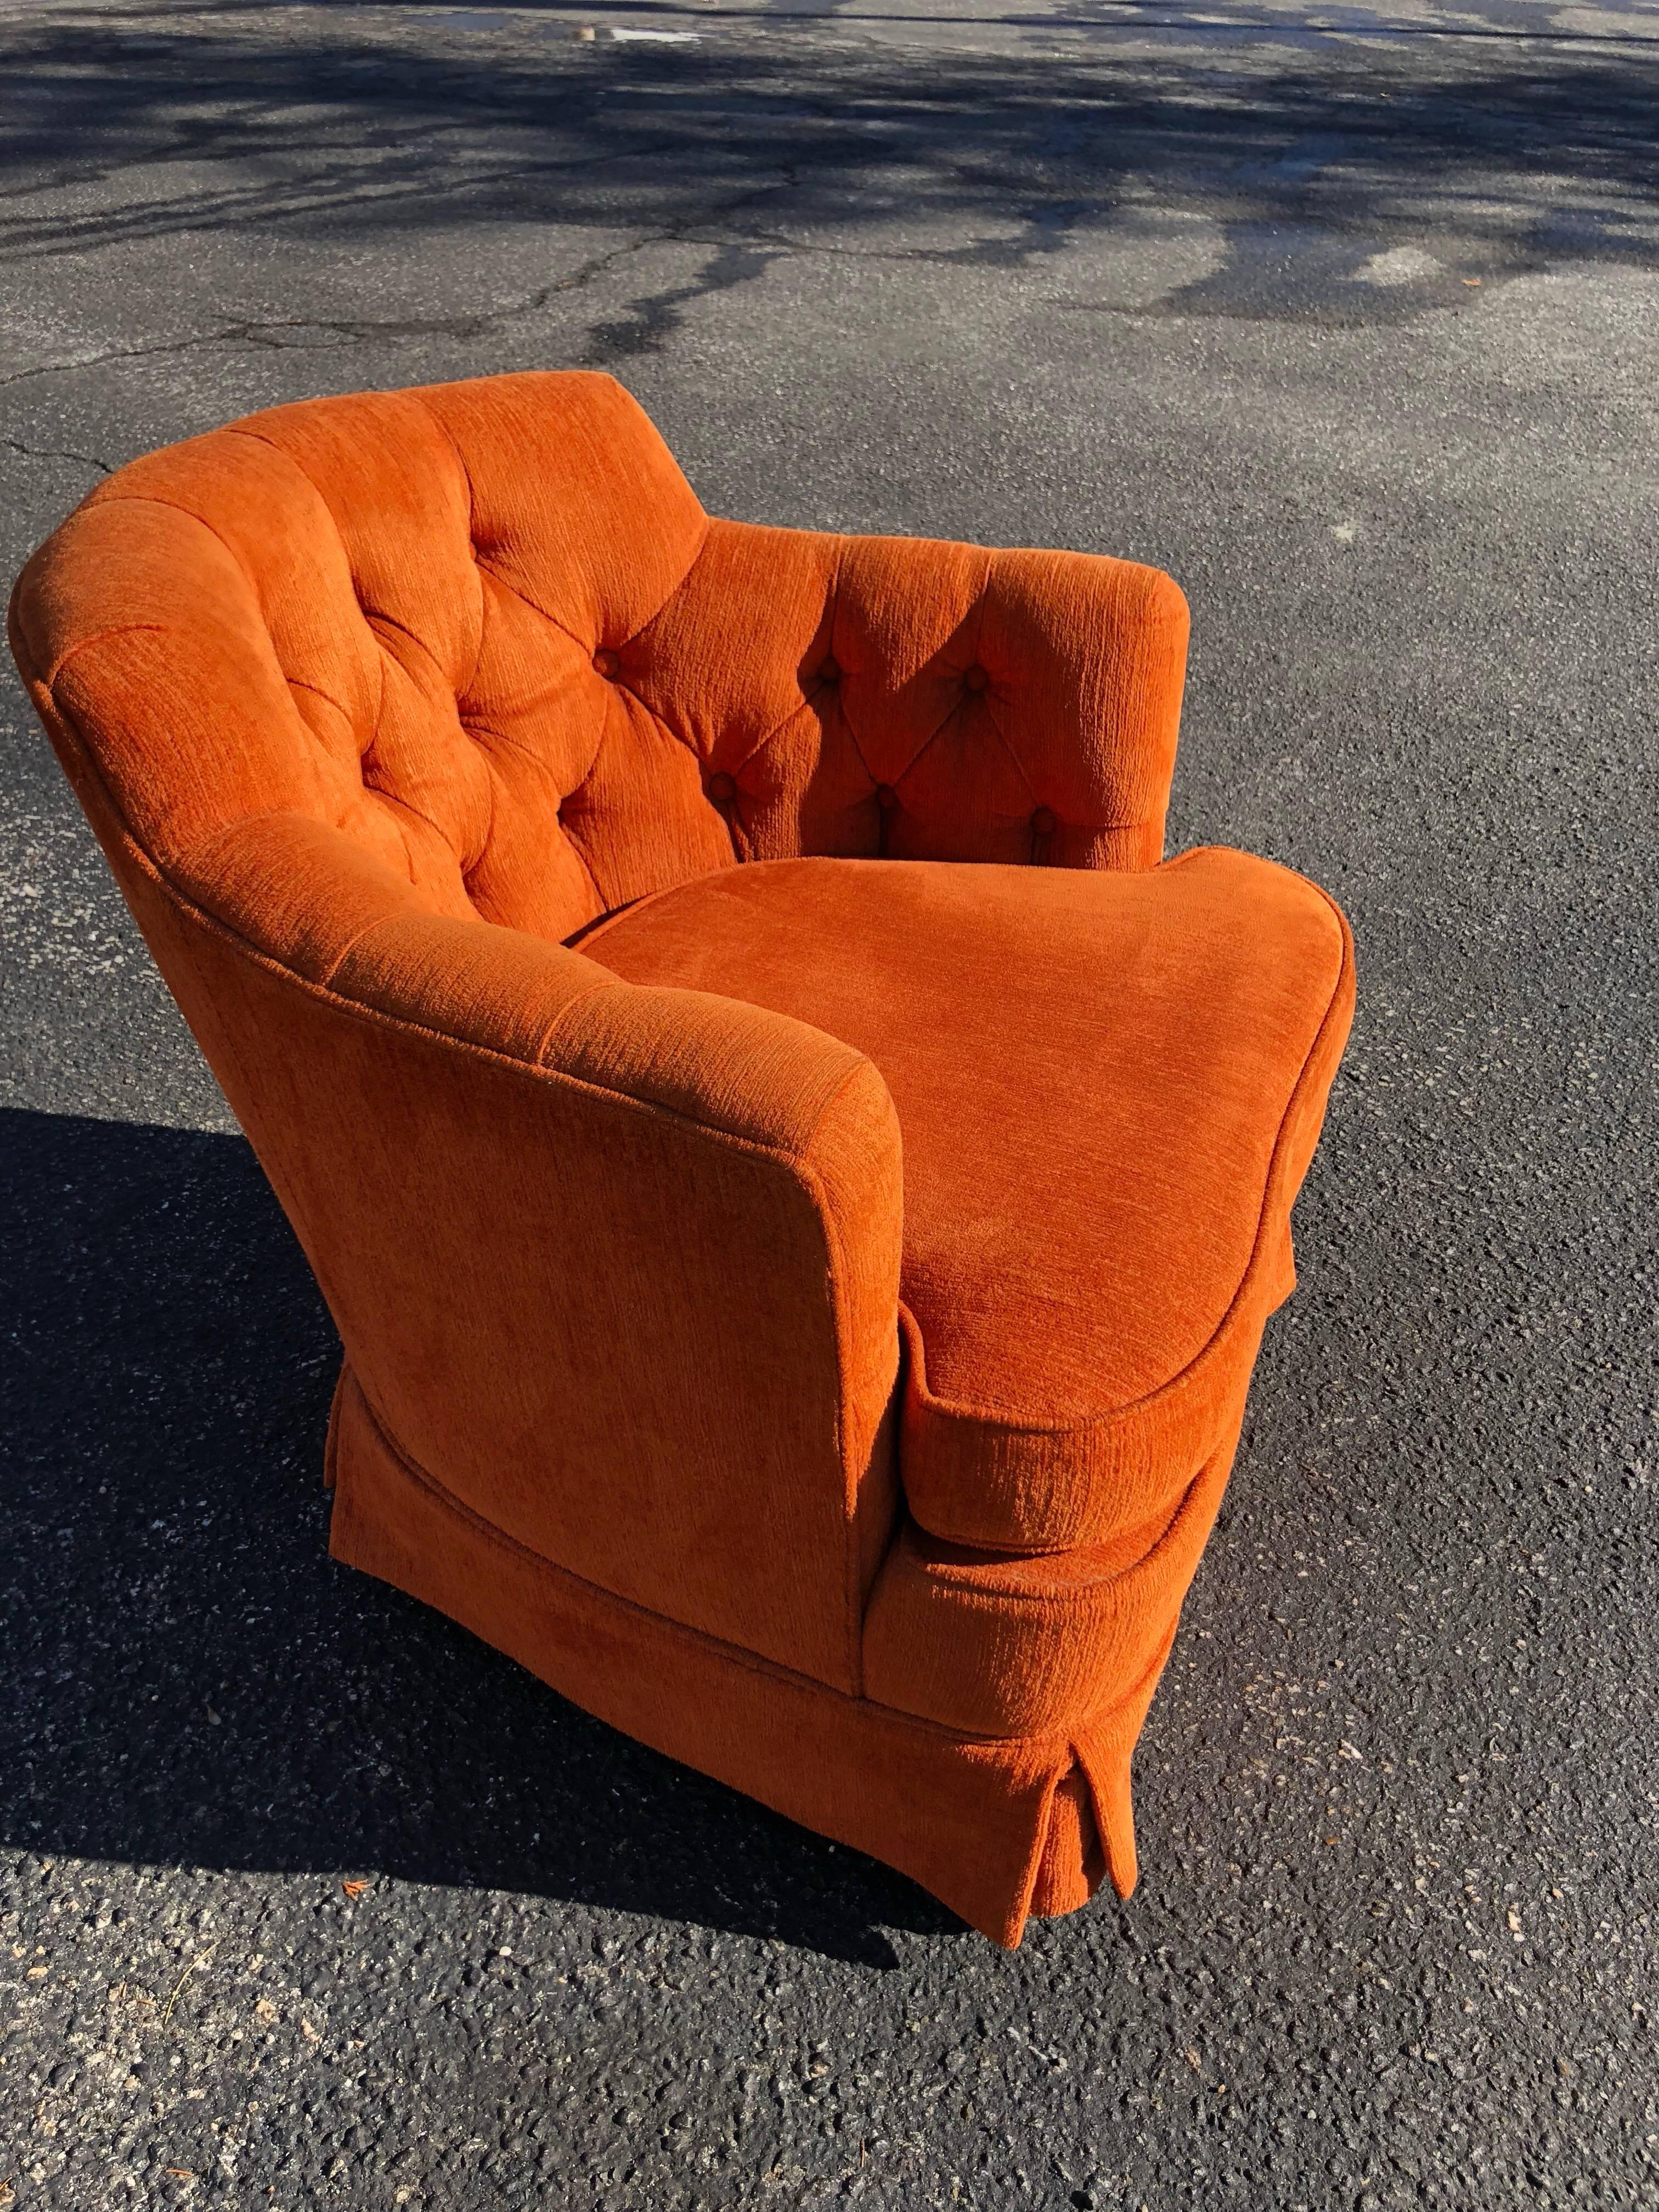 Hollywood Regency Tufted Orange Club Chair 1